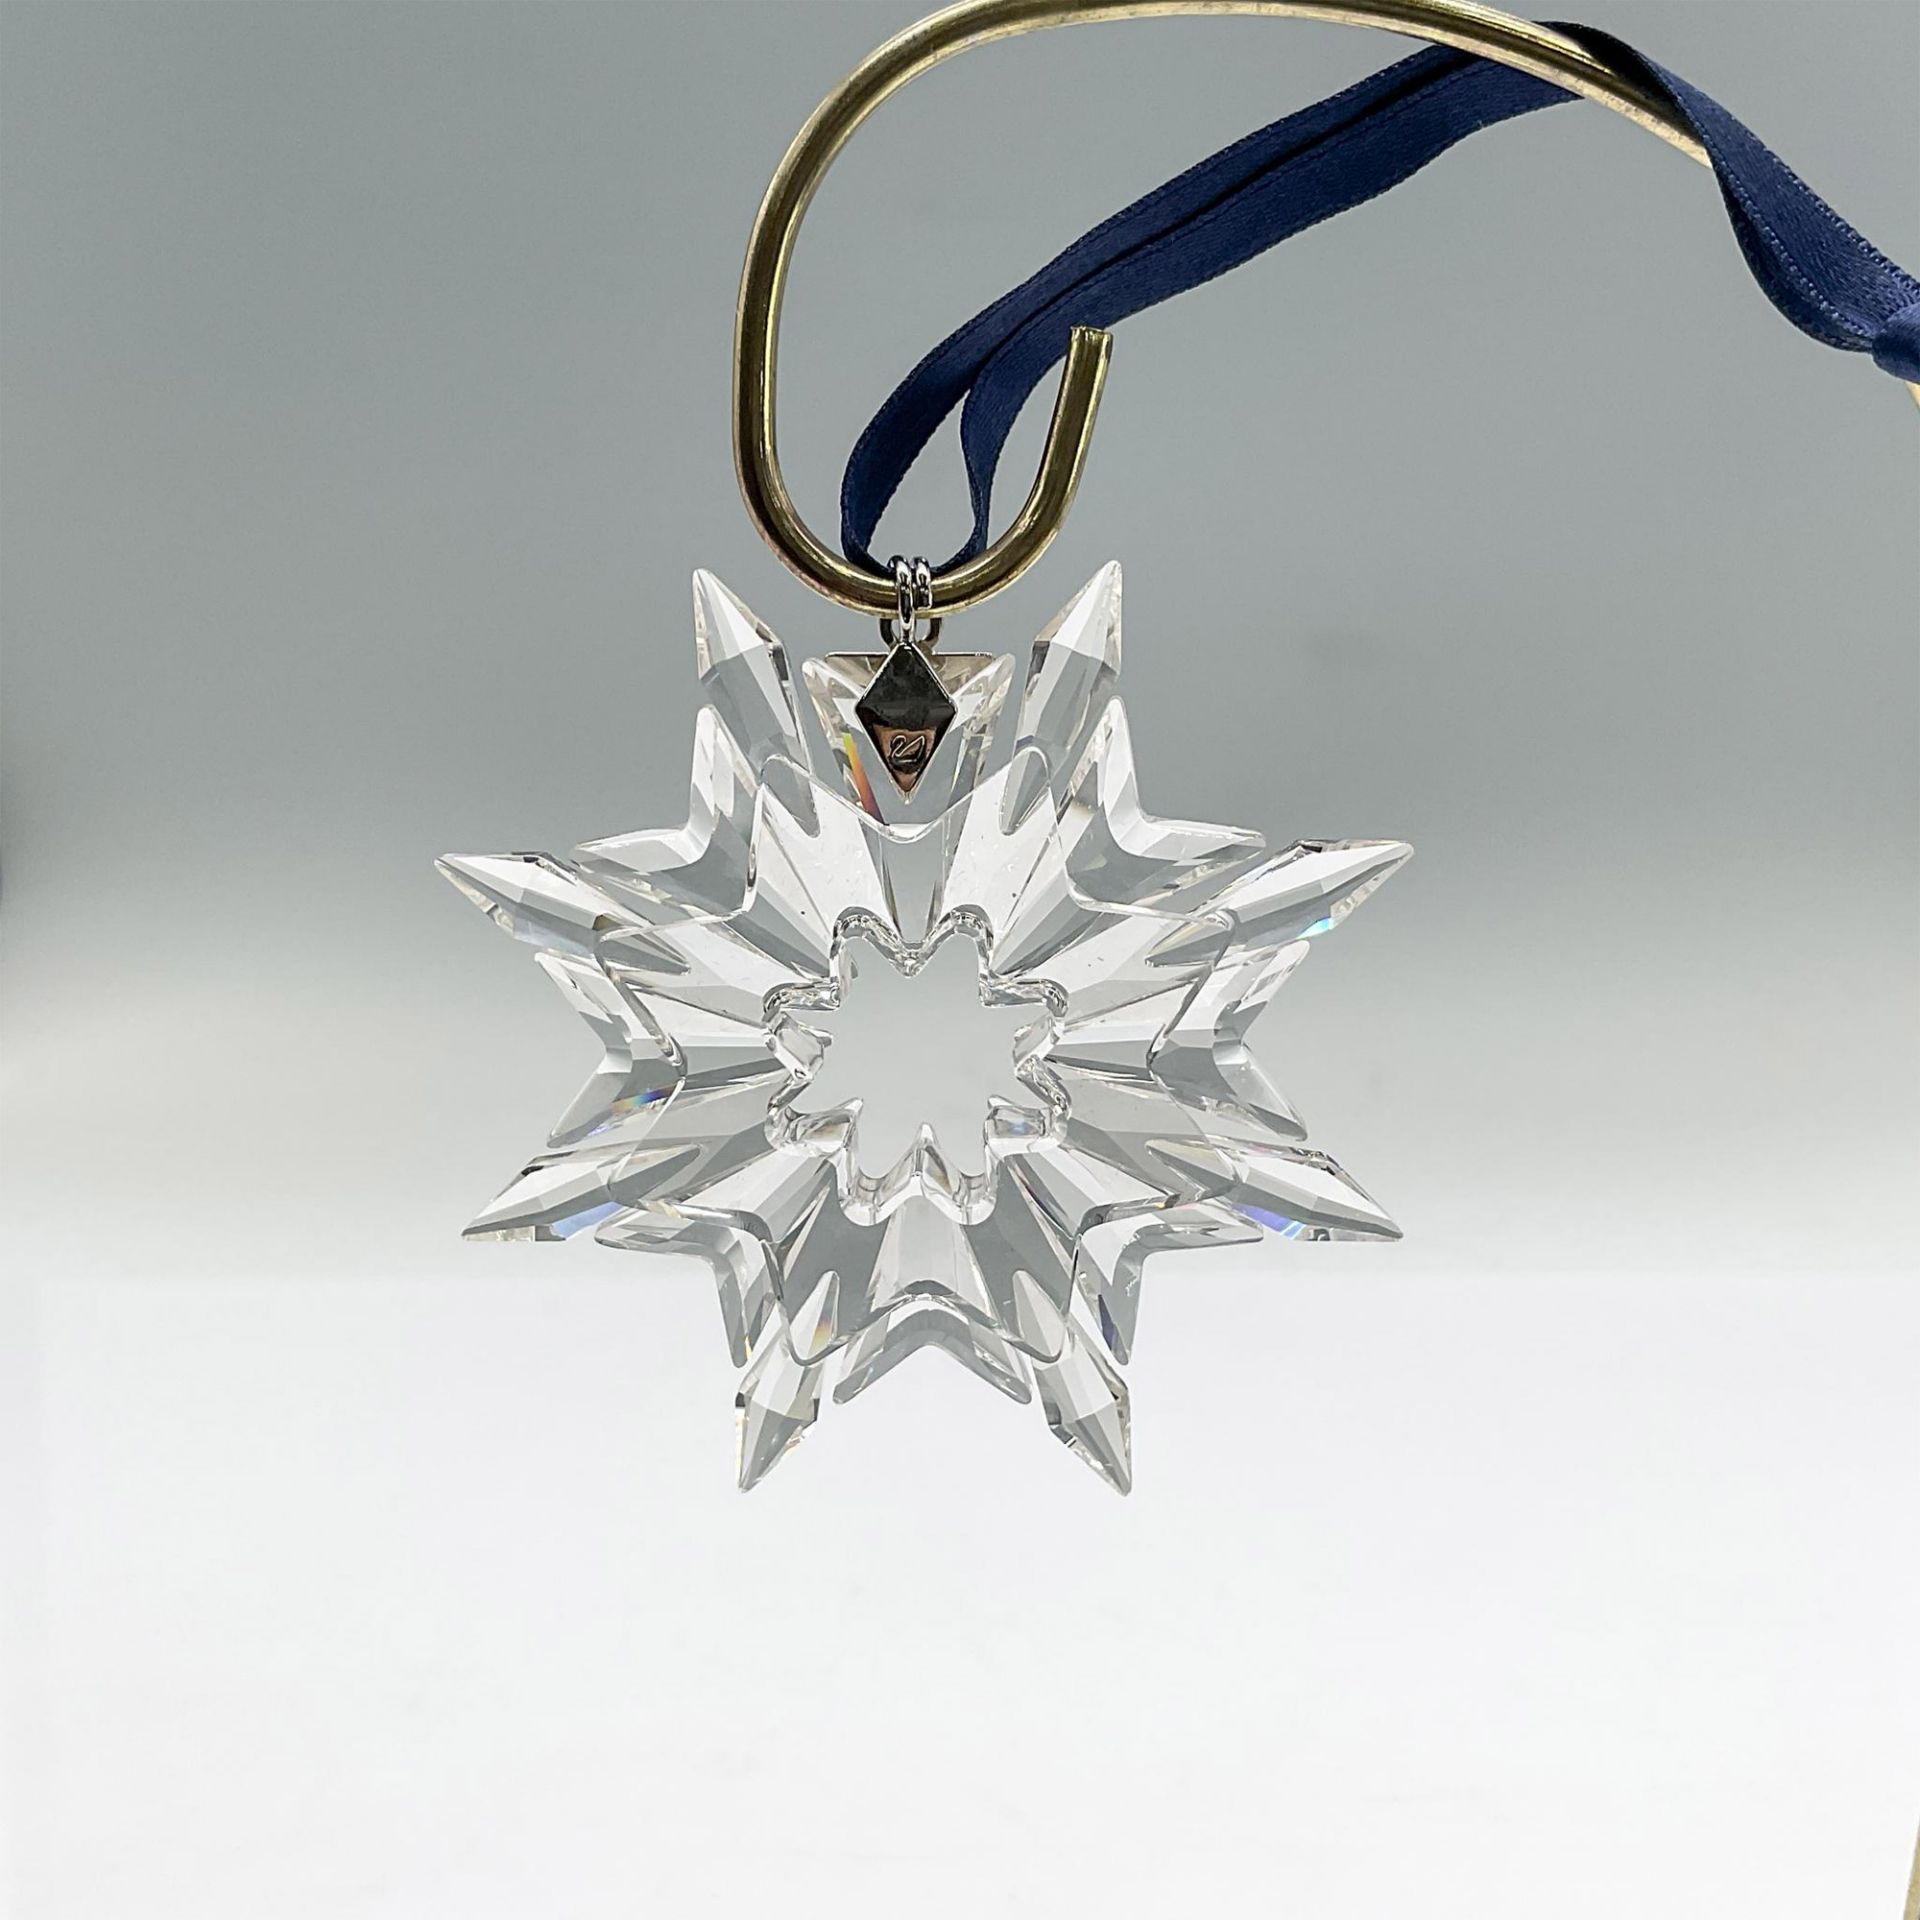 Swarovski Crystal Christmas Ornament 2003 - Image 2 of 3